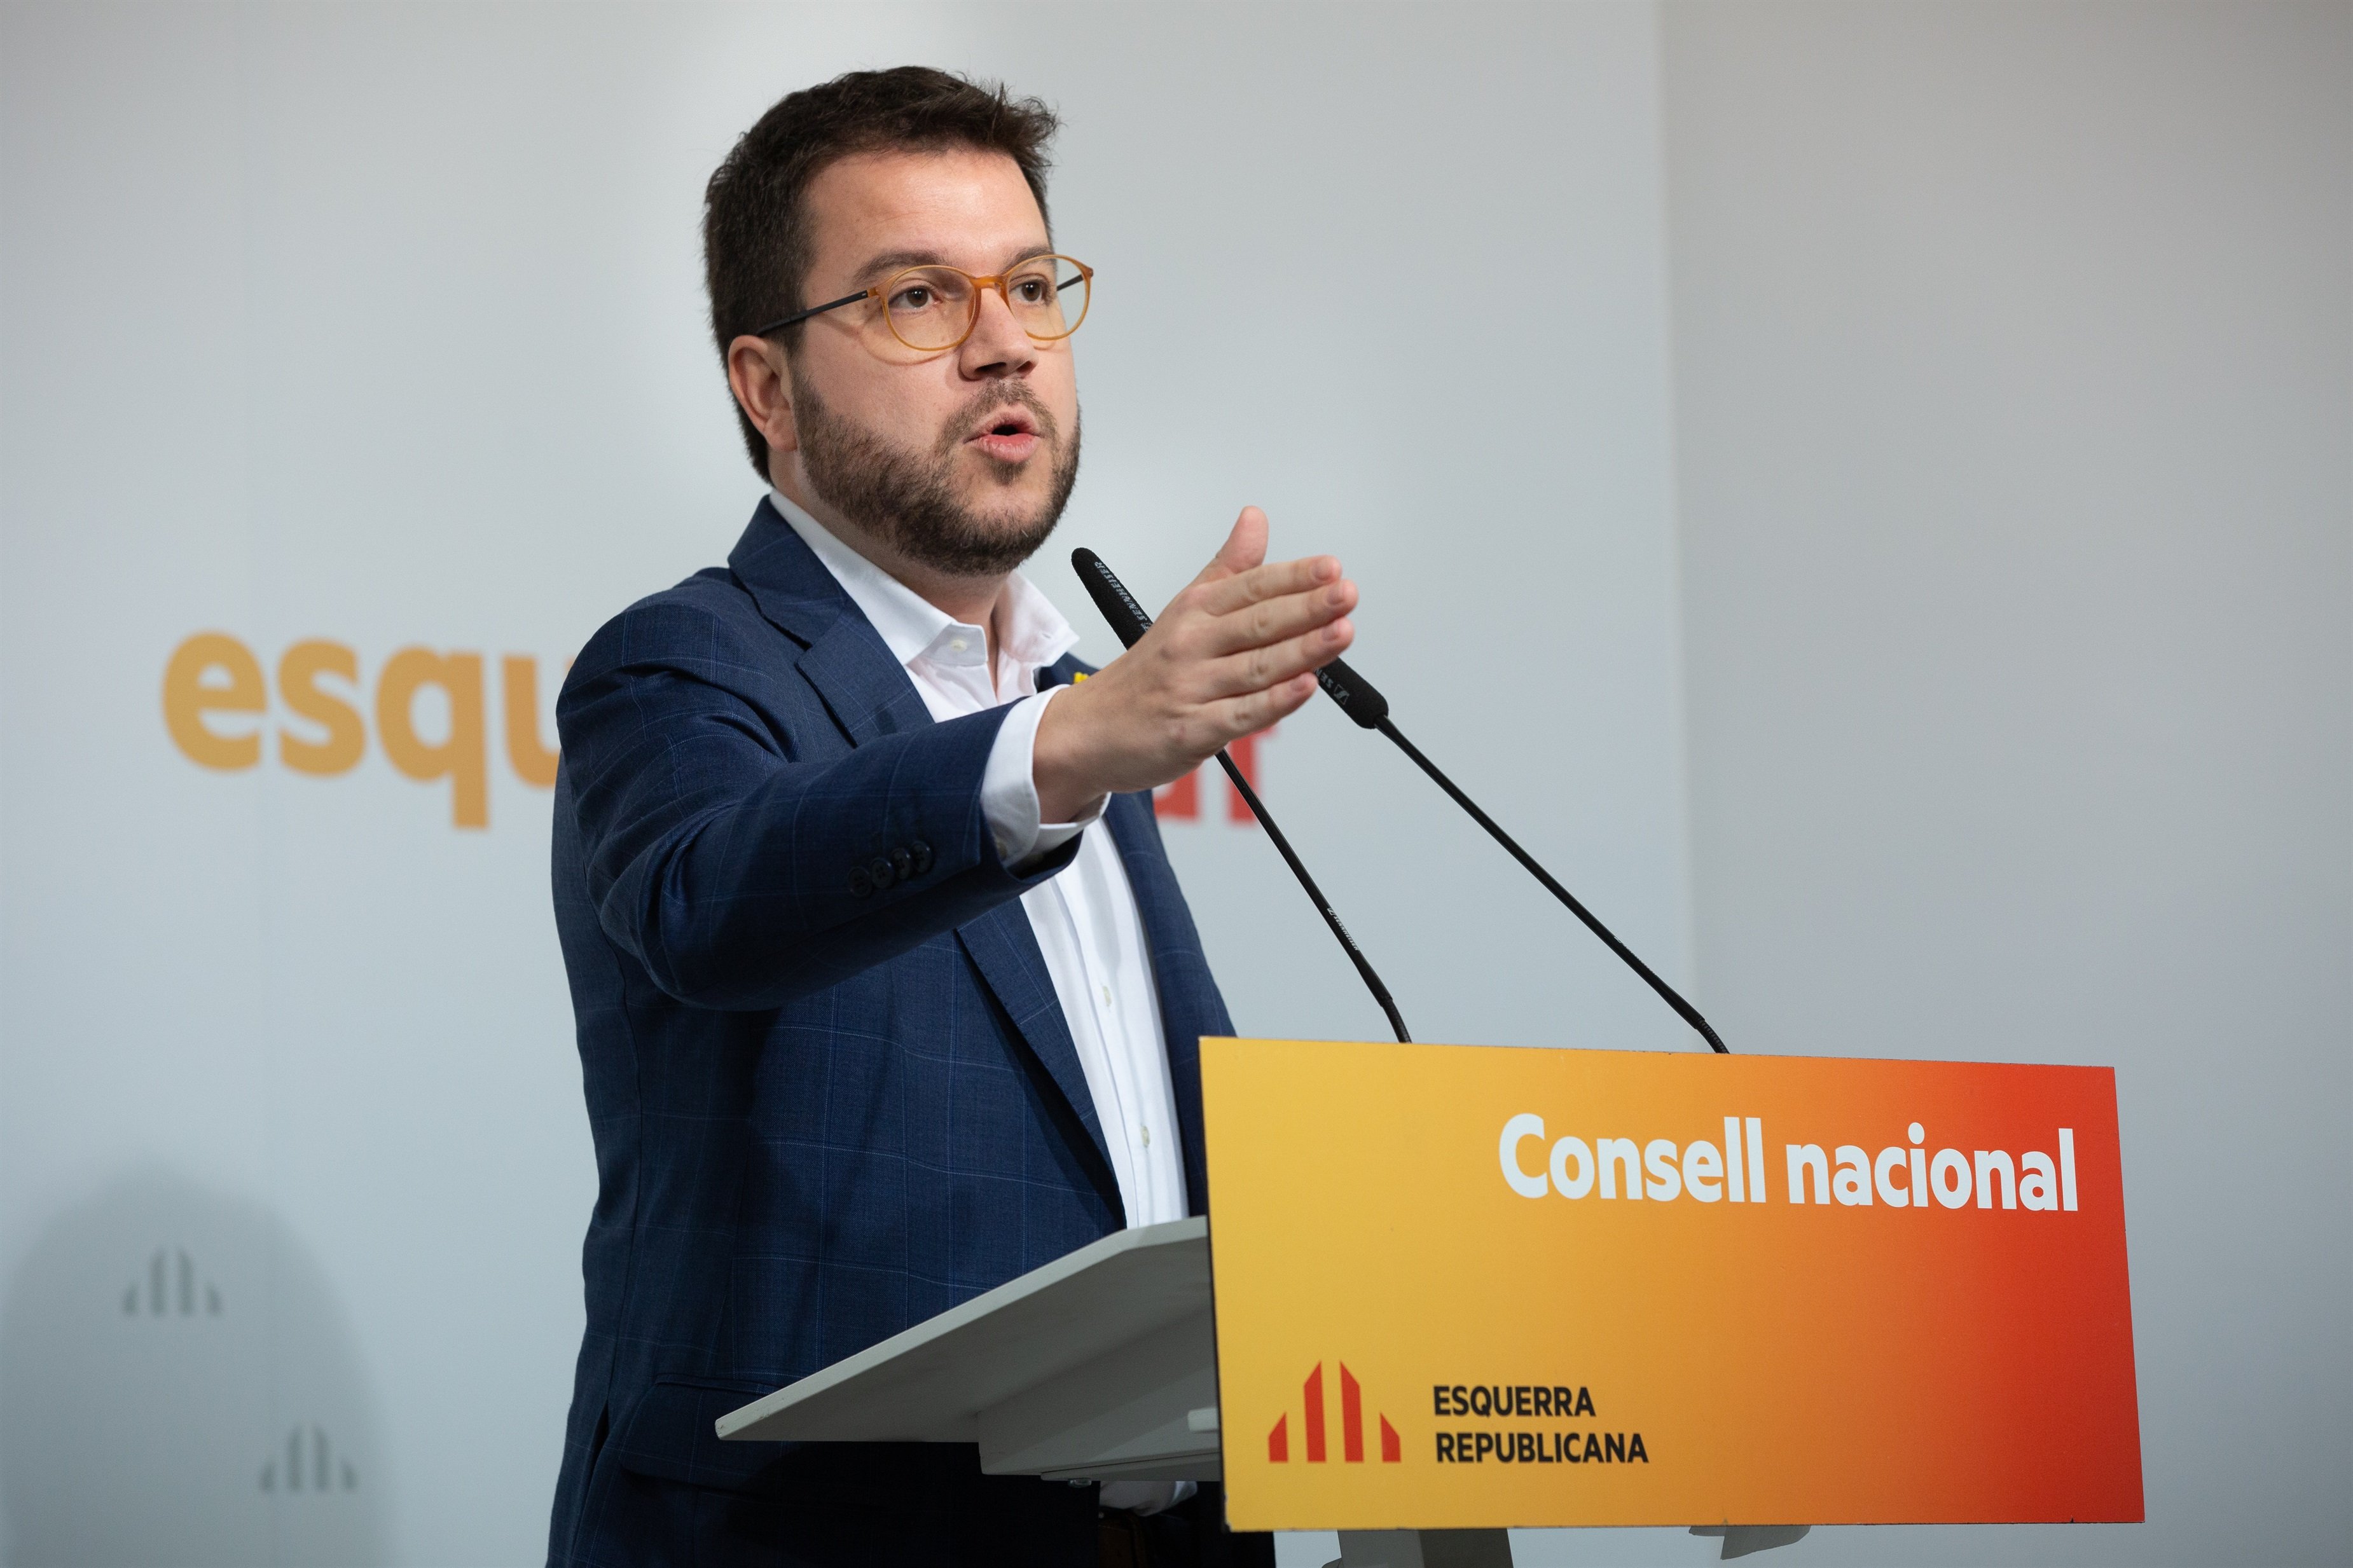 Aragonès reclama a l'independentisme "menys retrets i més feina"